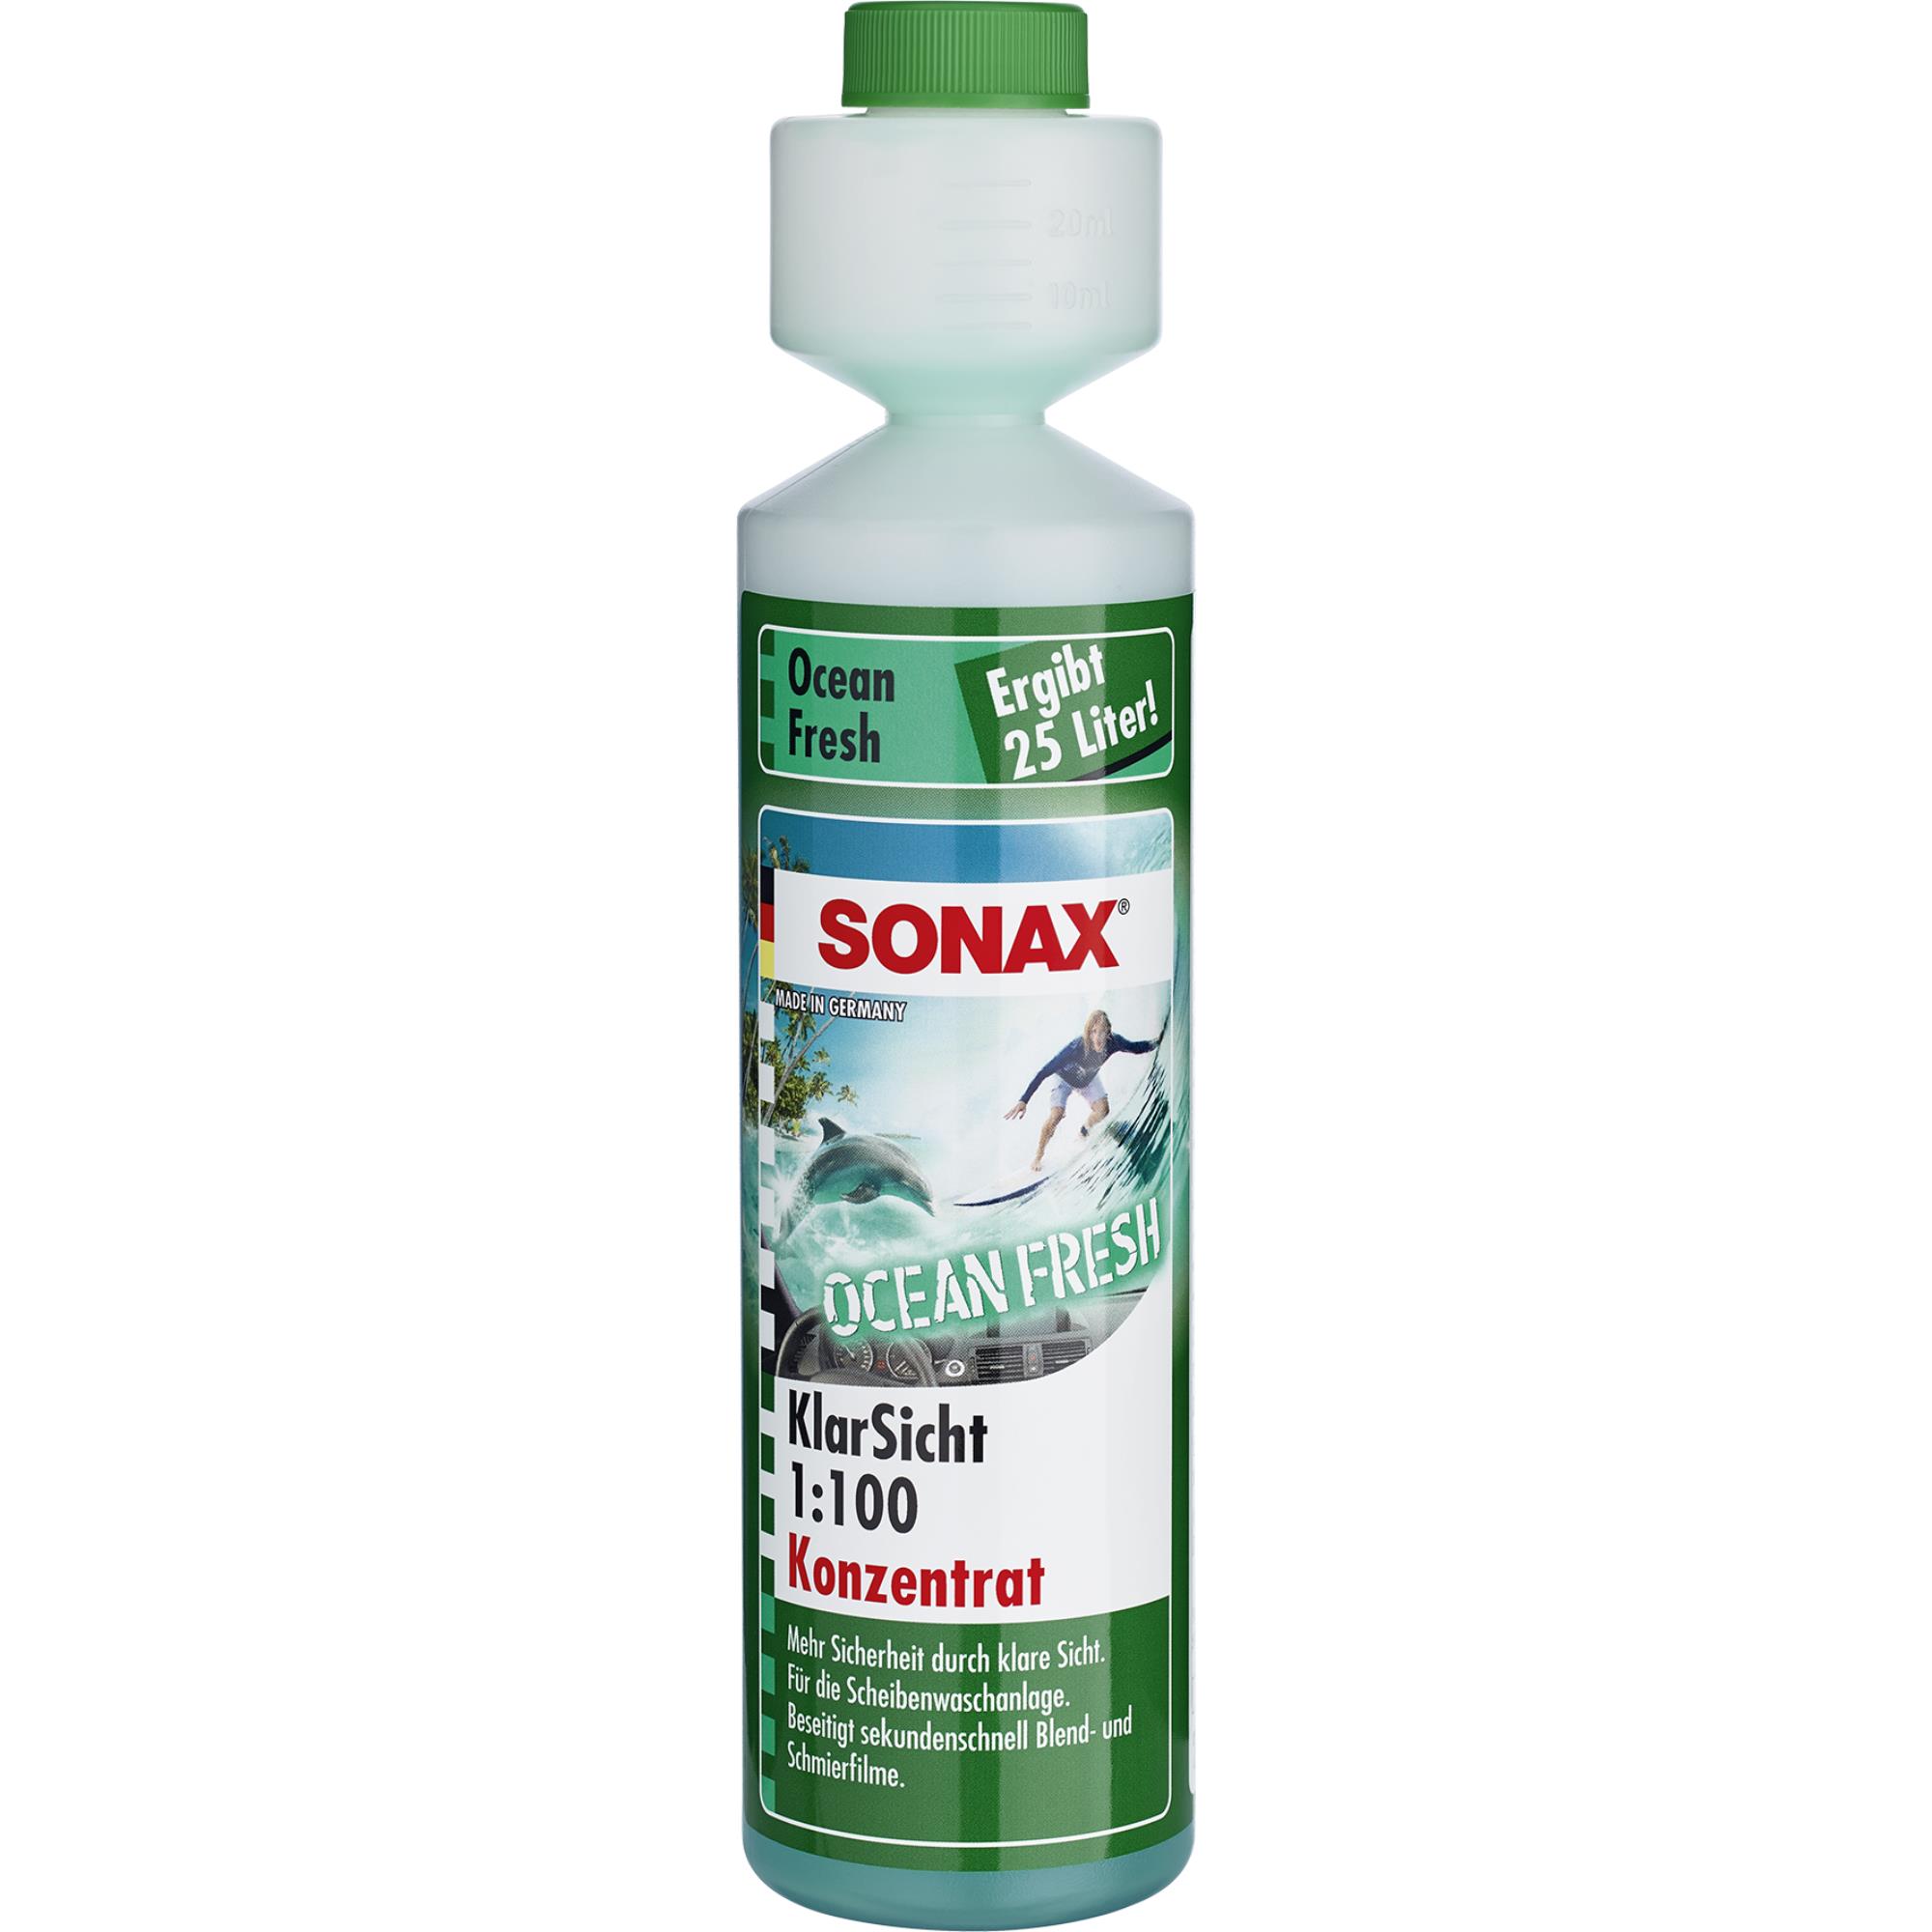 SONAX KlarSicht 1:100 Konzentrat Ocean-fresh Scheibenreiniger 250 ml